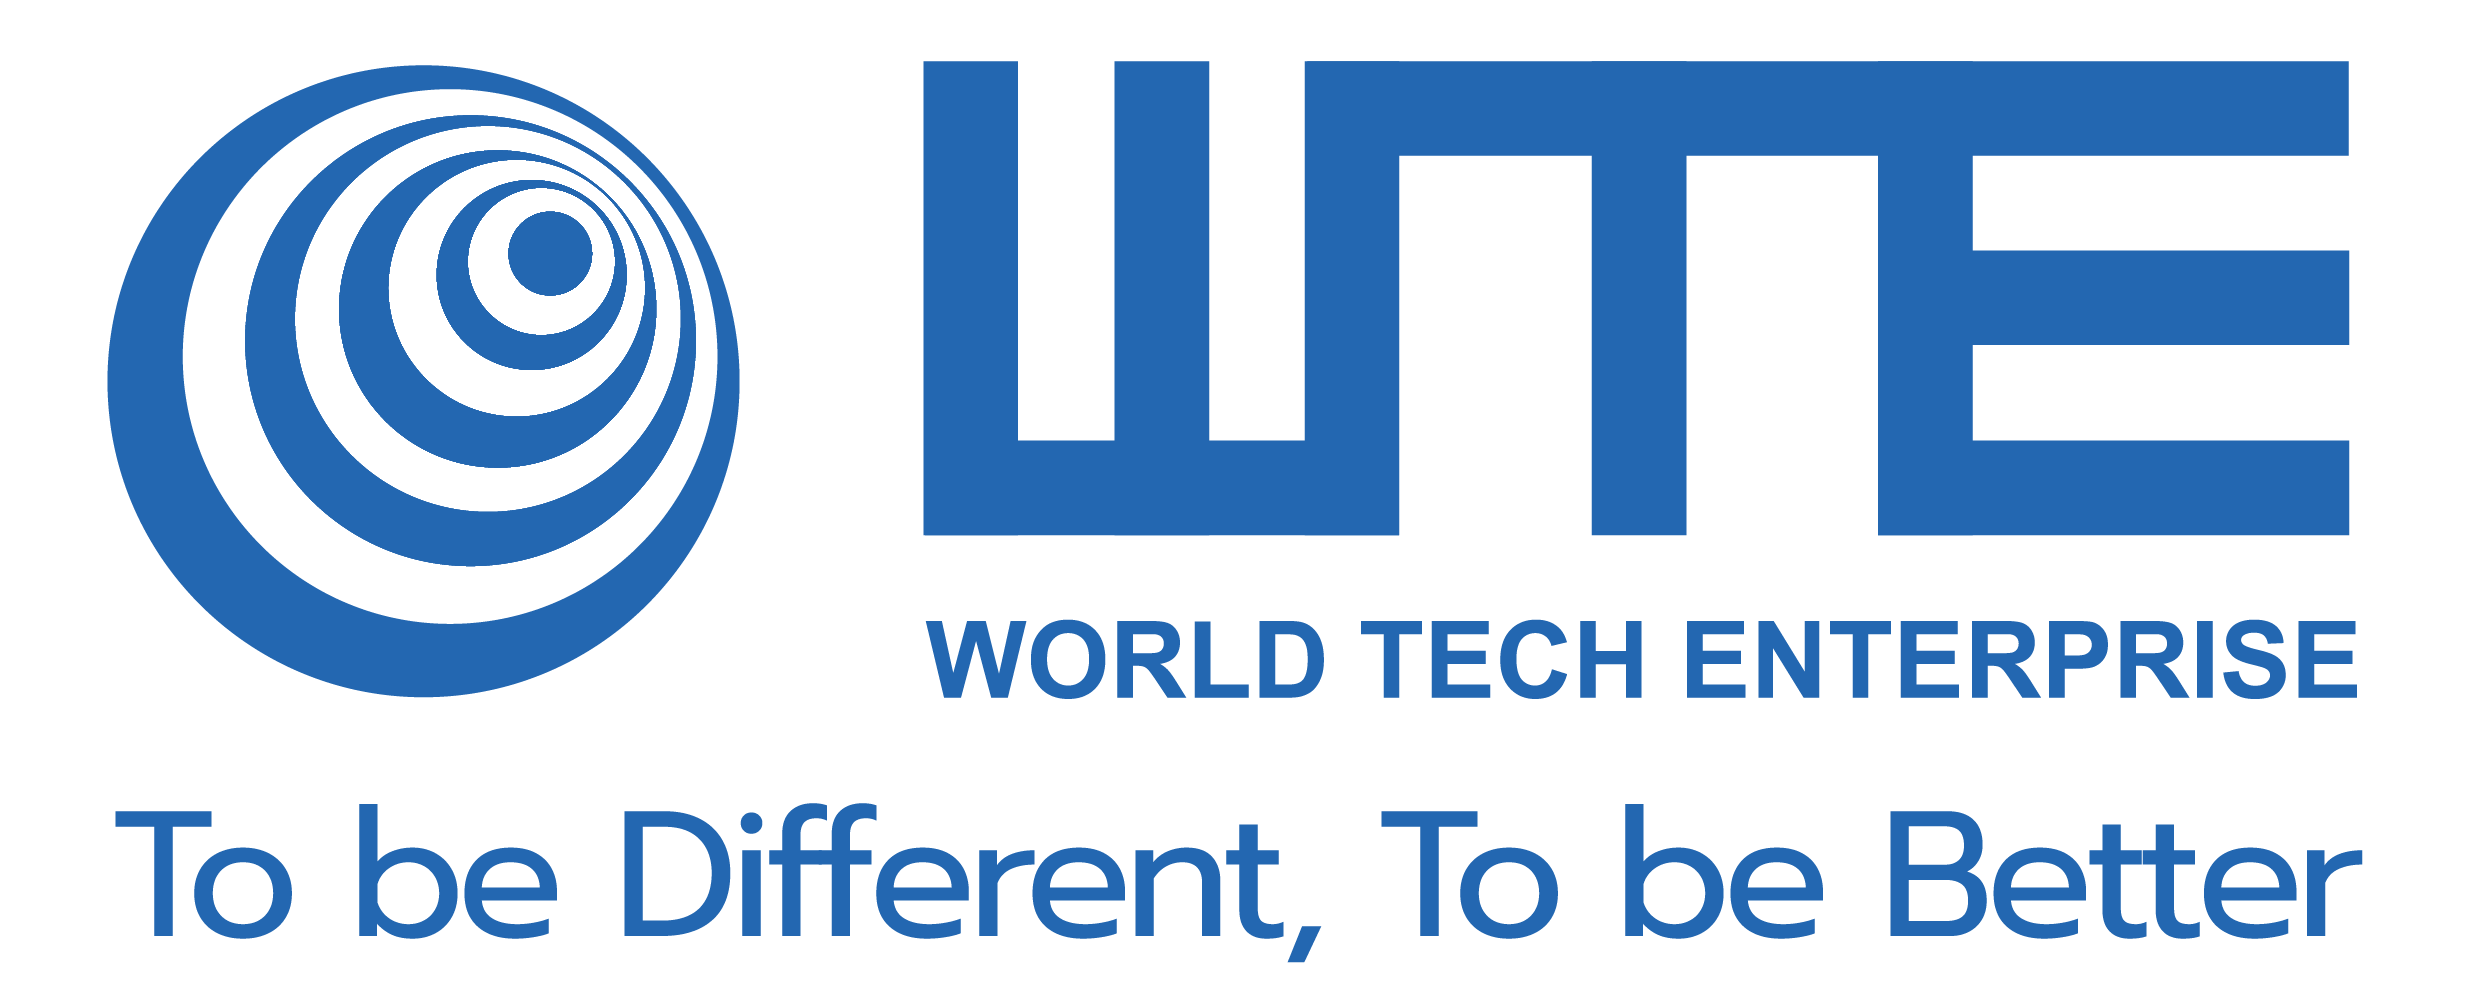 World Tech Enterprise Ltd.